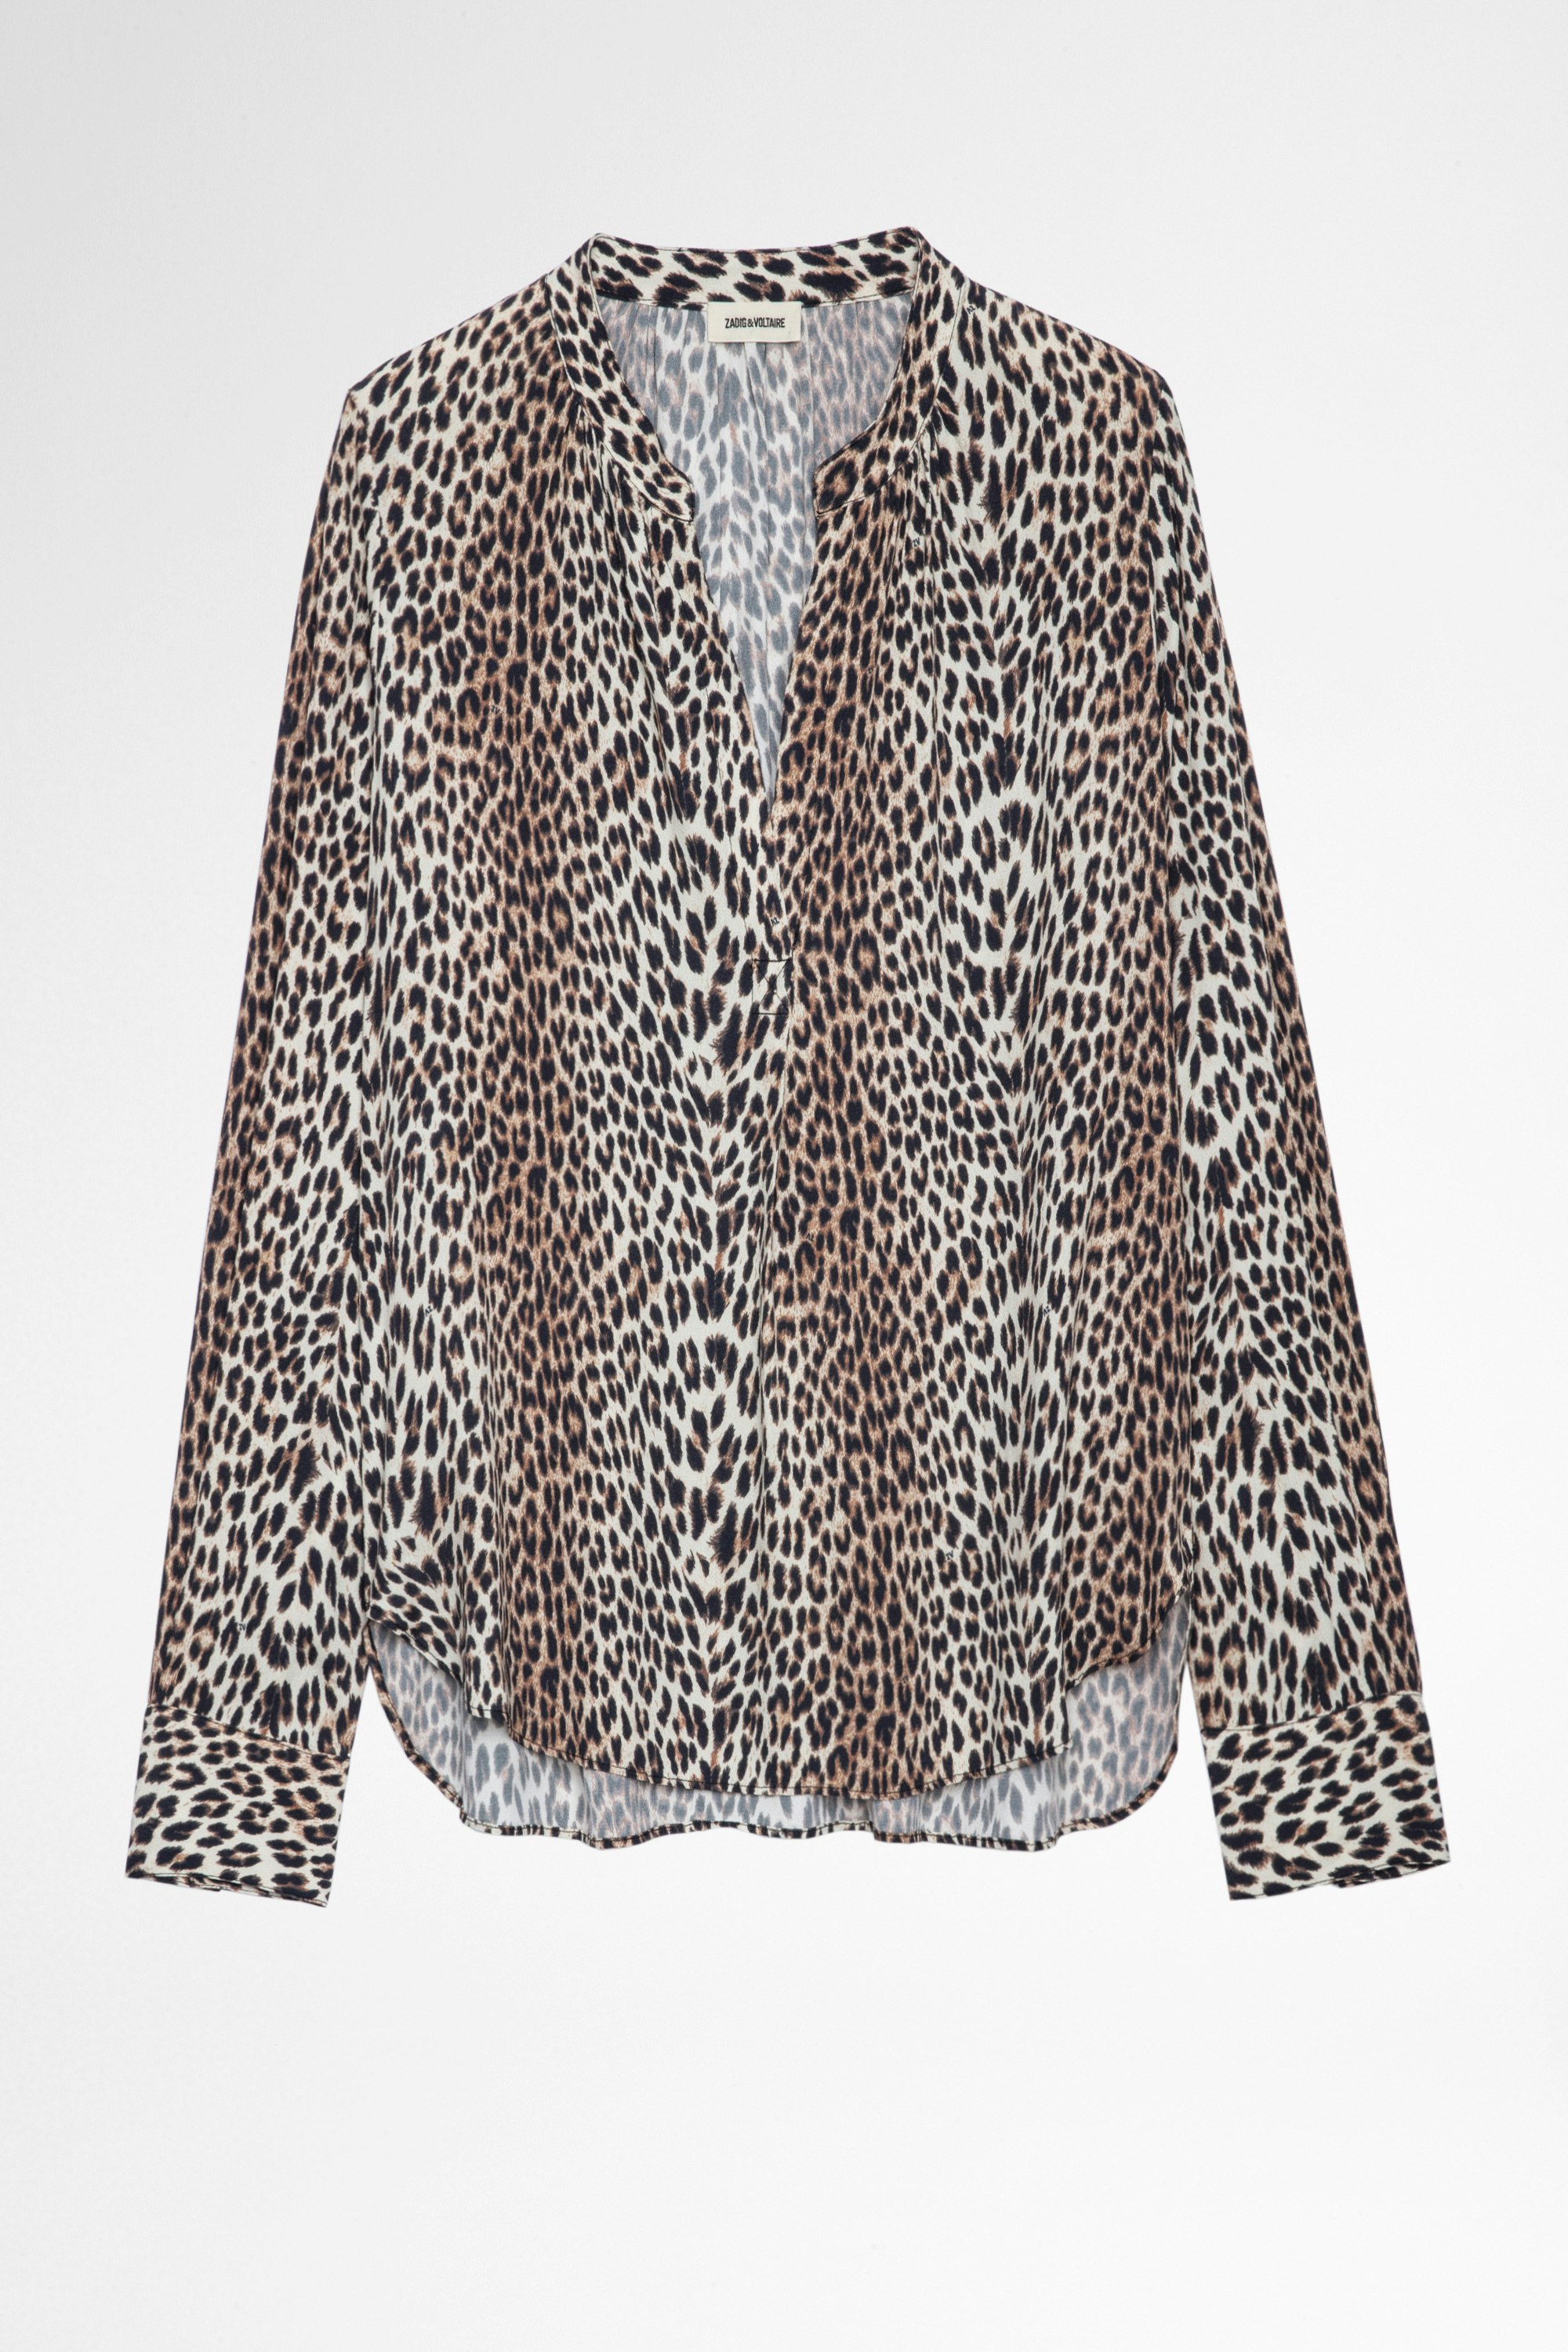 Blouse Tink Leopard Blouse imprimée léopard Femme